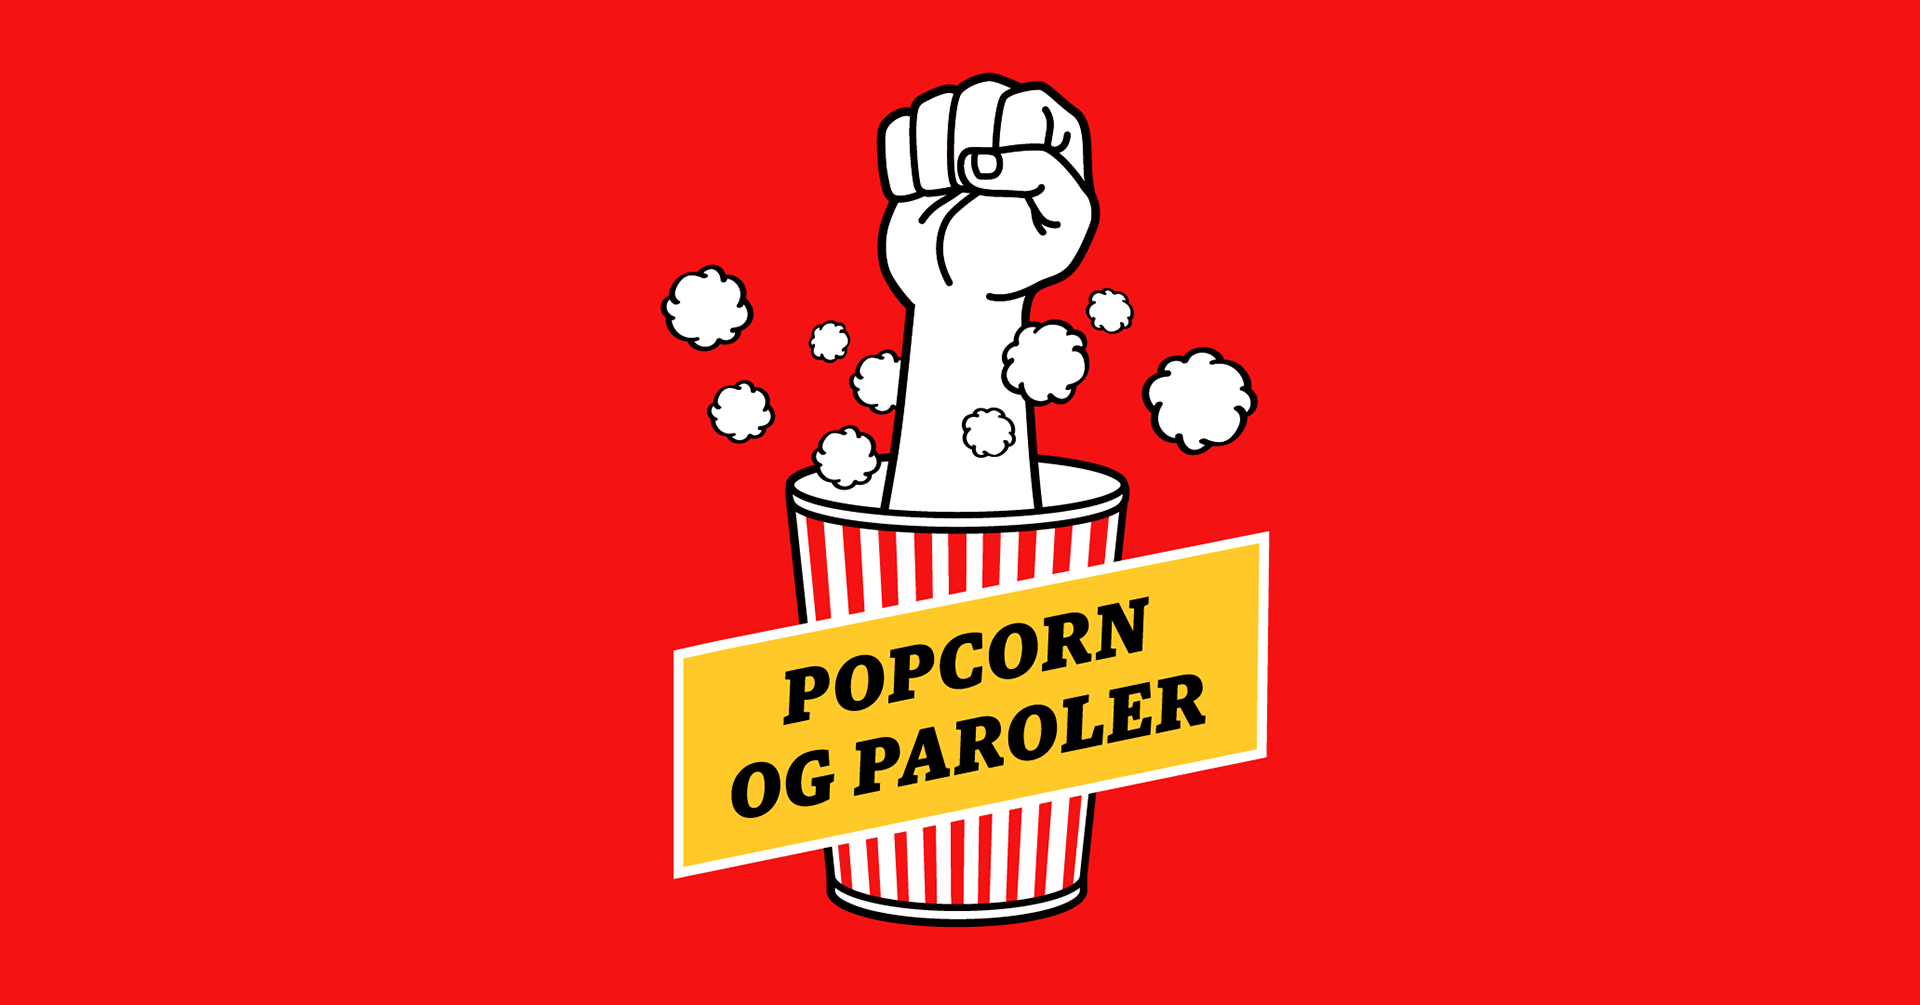 Logoen til Popcorn og paroler med rød bakgrunn, svart skrift og en popcornbøtte med popcorn og en knyttneve i.